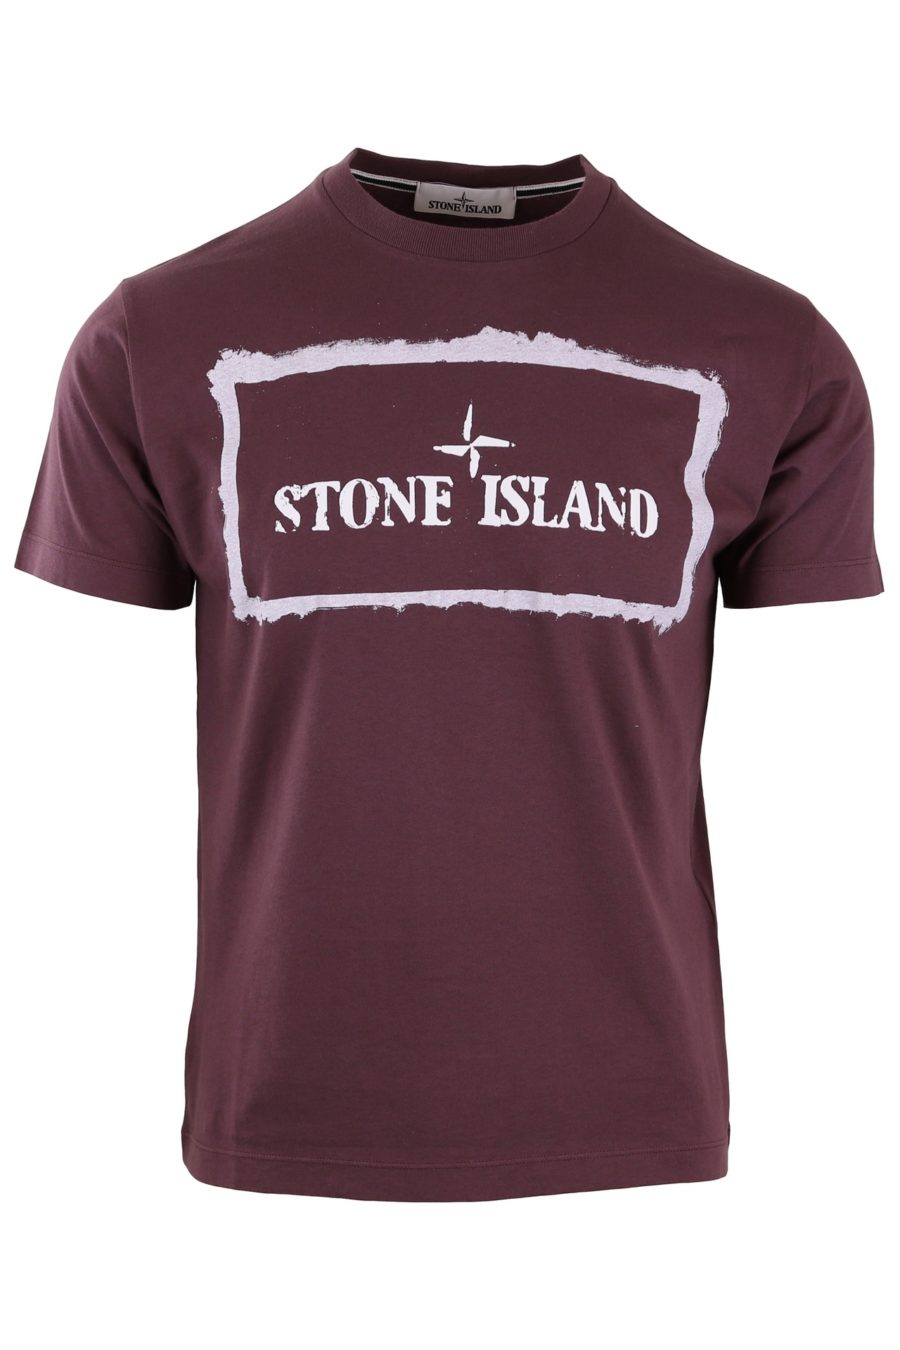 Camiseta Stone Island burdeo logo blanco - fb34f081377006574e4db05afbdb1d5403d65410